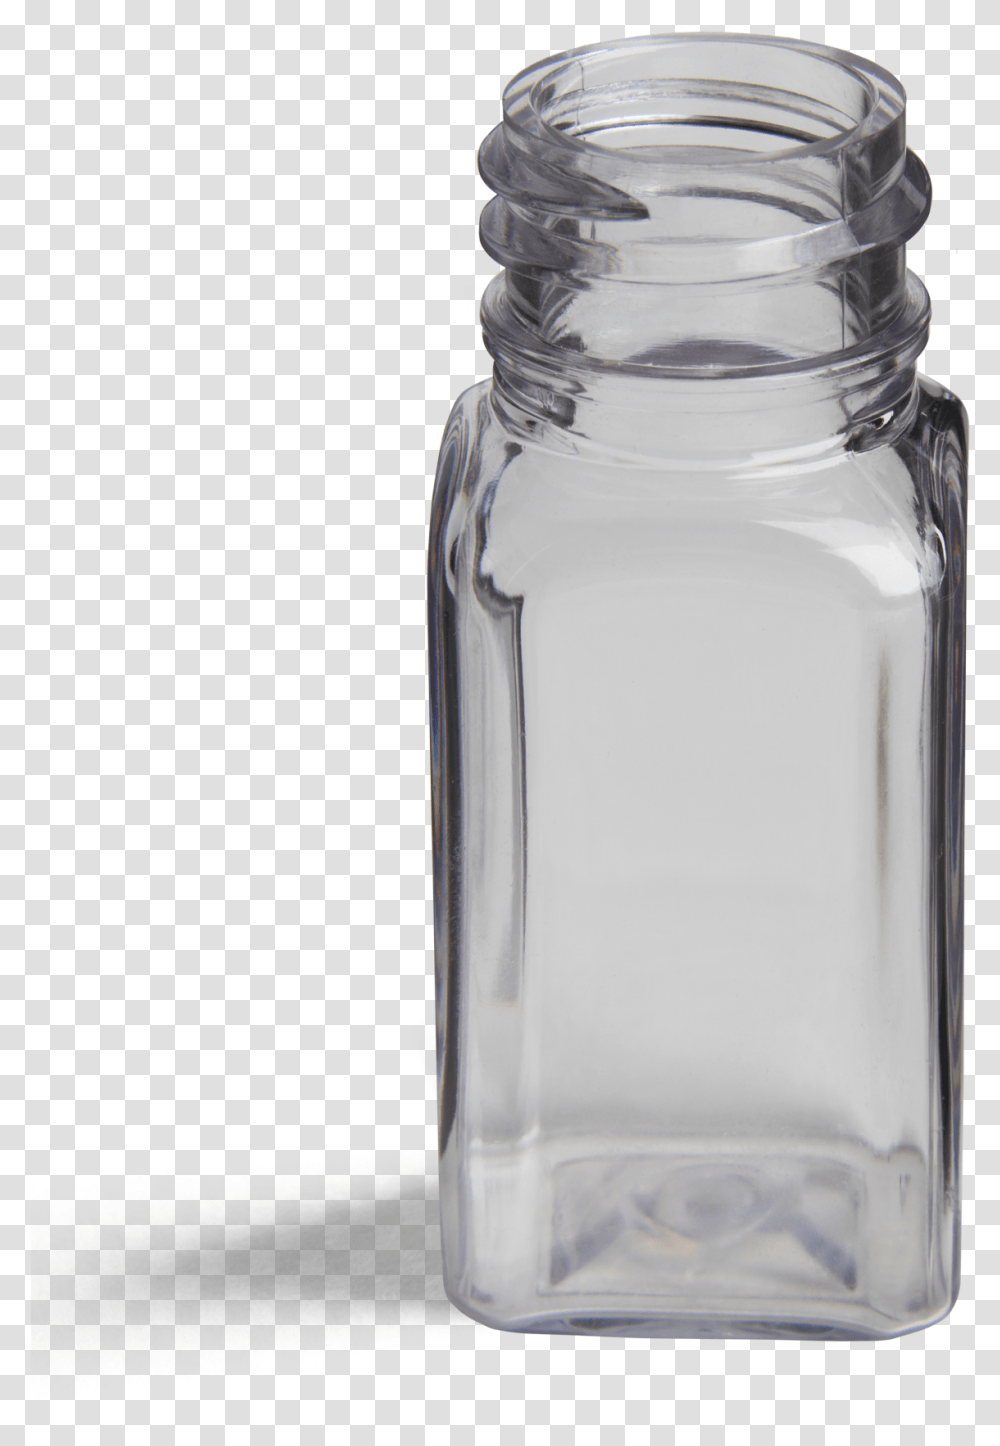 Oz French Square Glass Bottle, Milk, Beverage, Drink, Jar Transparent Png